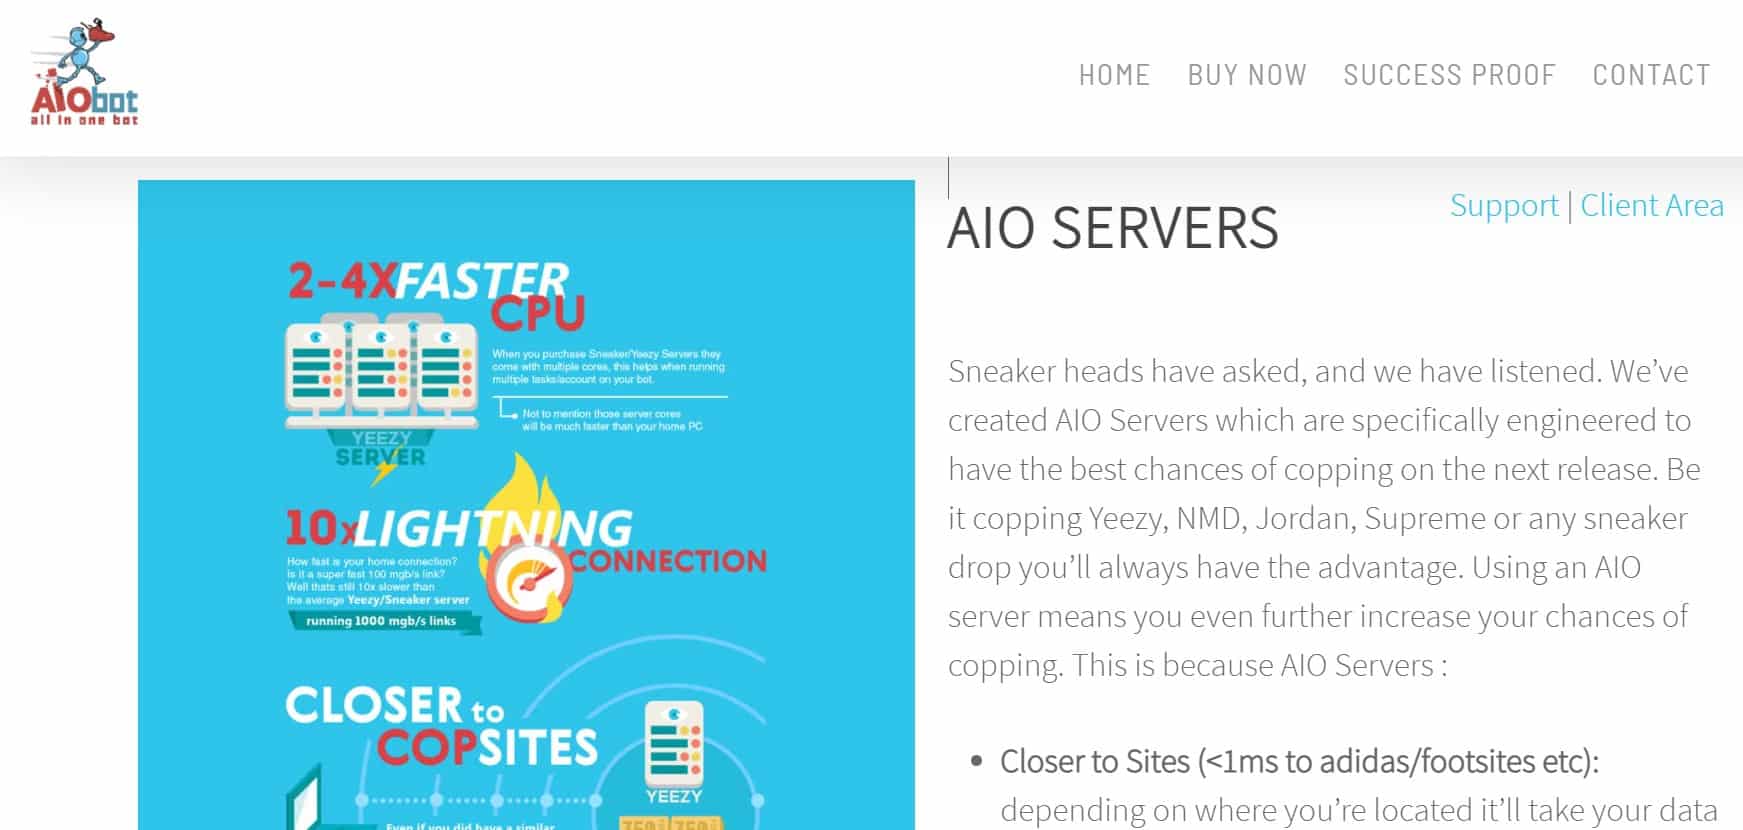 AIO Servers homepage